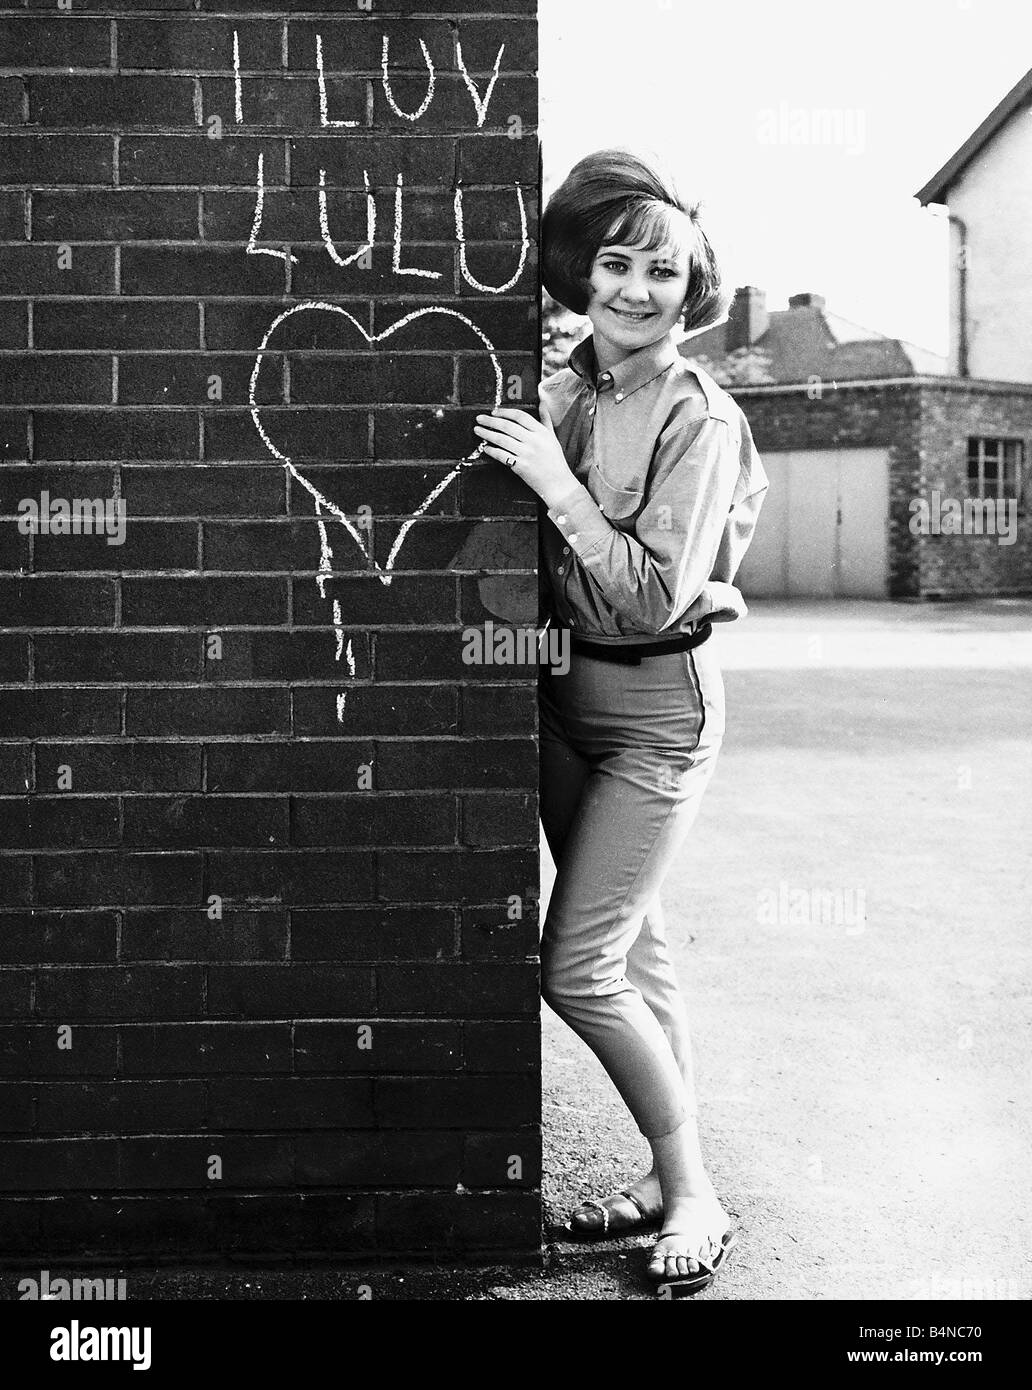 LuLu-Pop-Sängerin steht neben der Mauer im Jahr 1964 Stockfoto